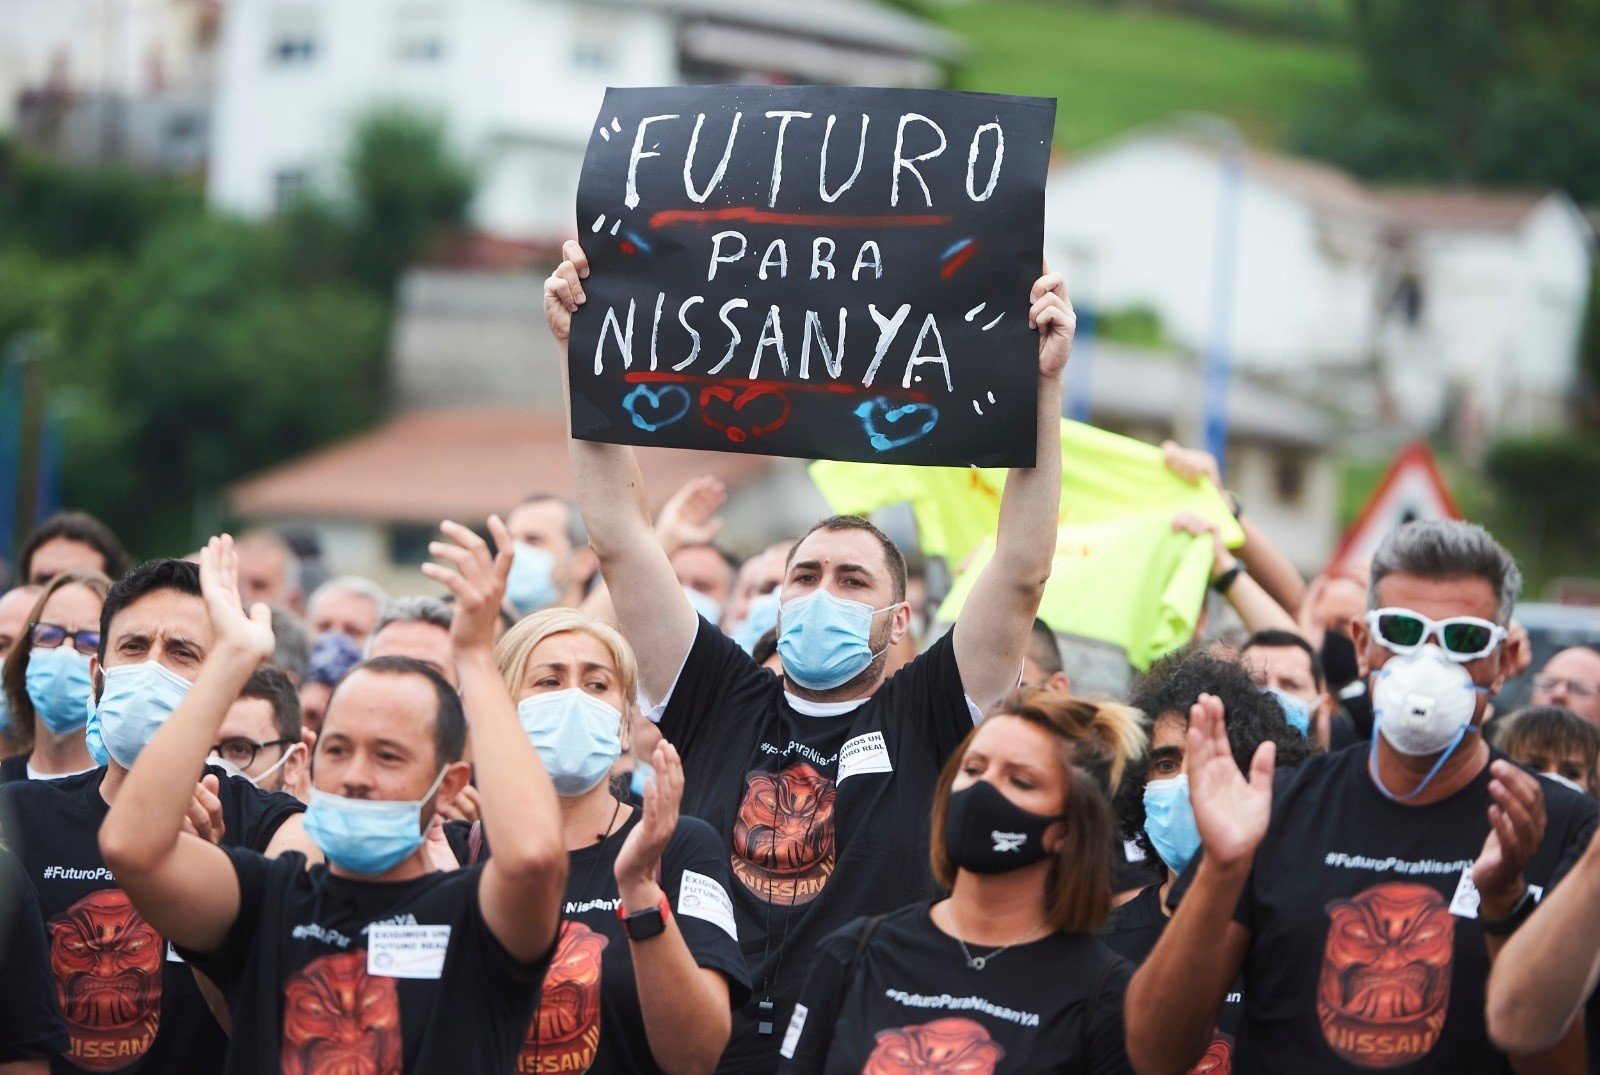 El cierre de Nissan afectará a 11.500 trabajadores en Catalunya